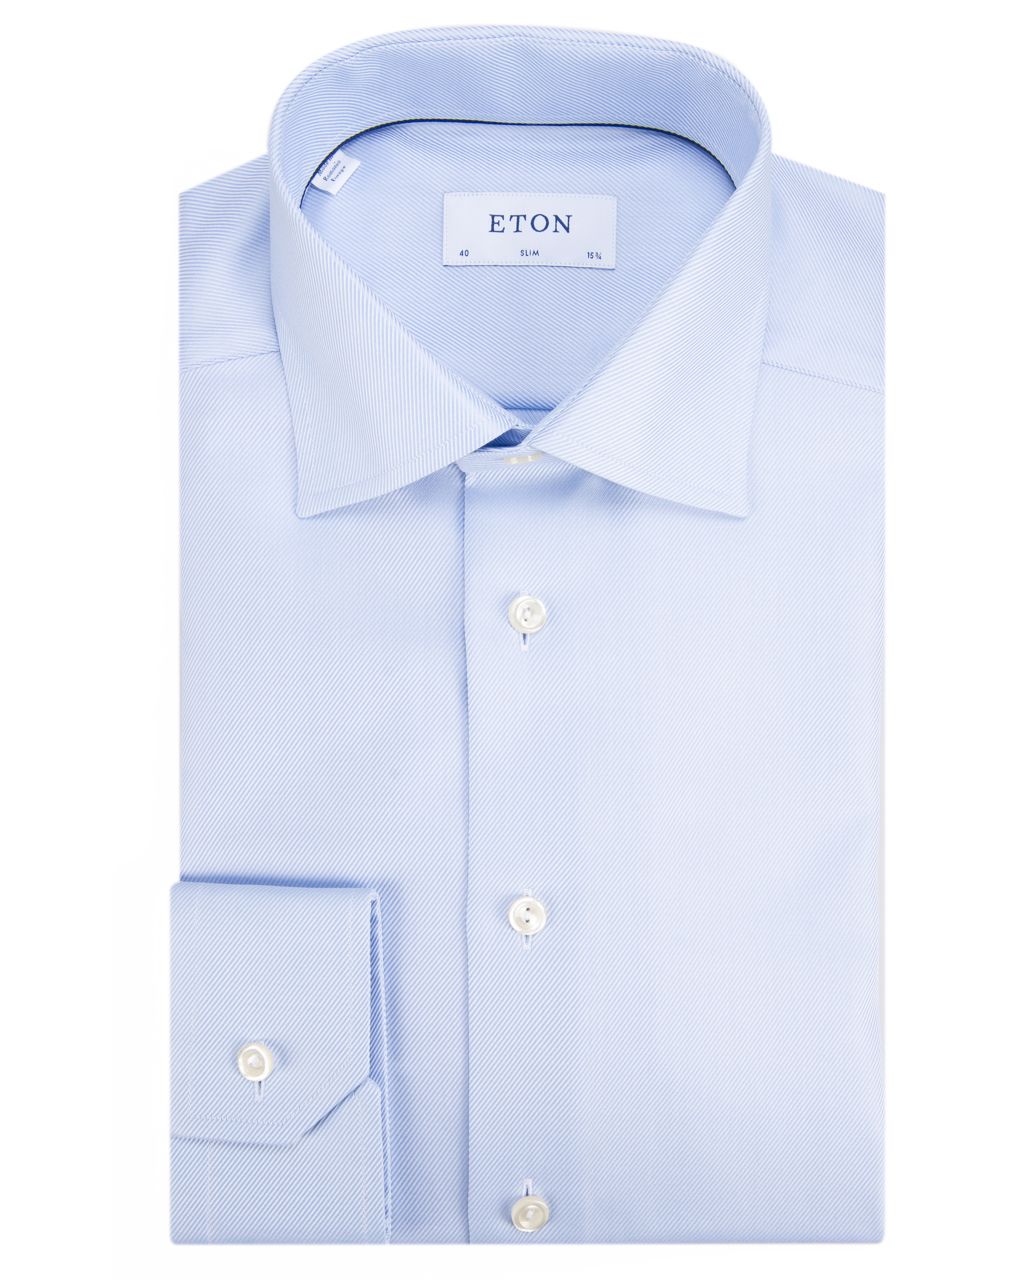 ETON Slim fit Overhemd LM Lichtblauw 025677-001-38